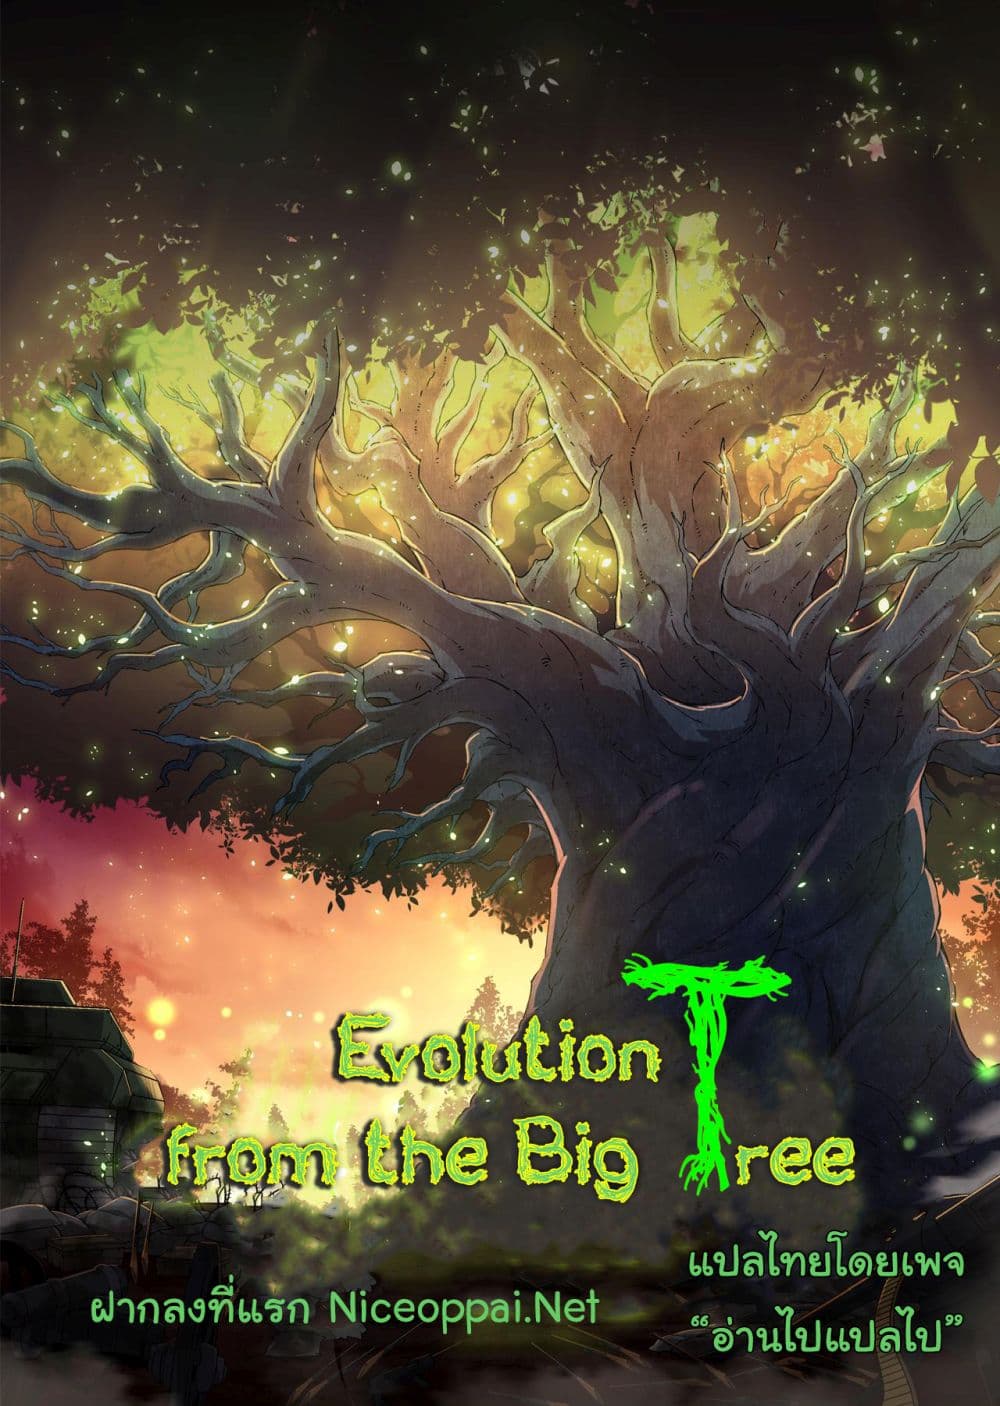 Evolution from the Big Tree Ã Â¸â€¢Ã Â¸Â­Ã Â¸â„¢Ã Â¸â€”Ã Â¸ÂµÃ Â¹Ë† 15 (53)